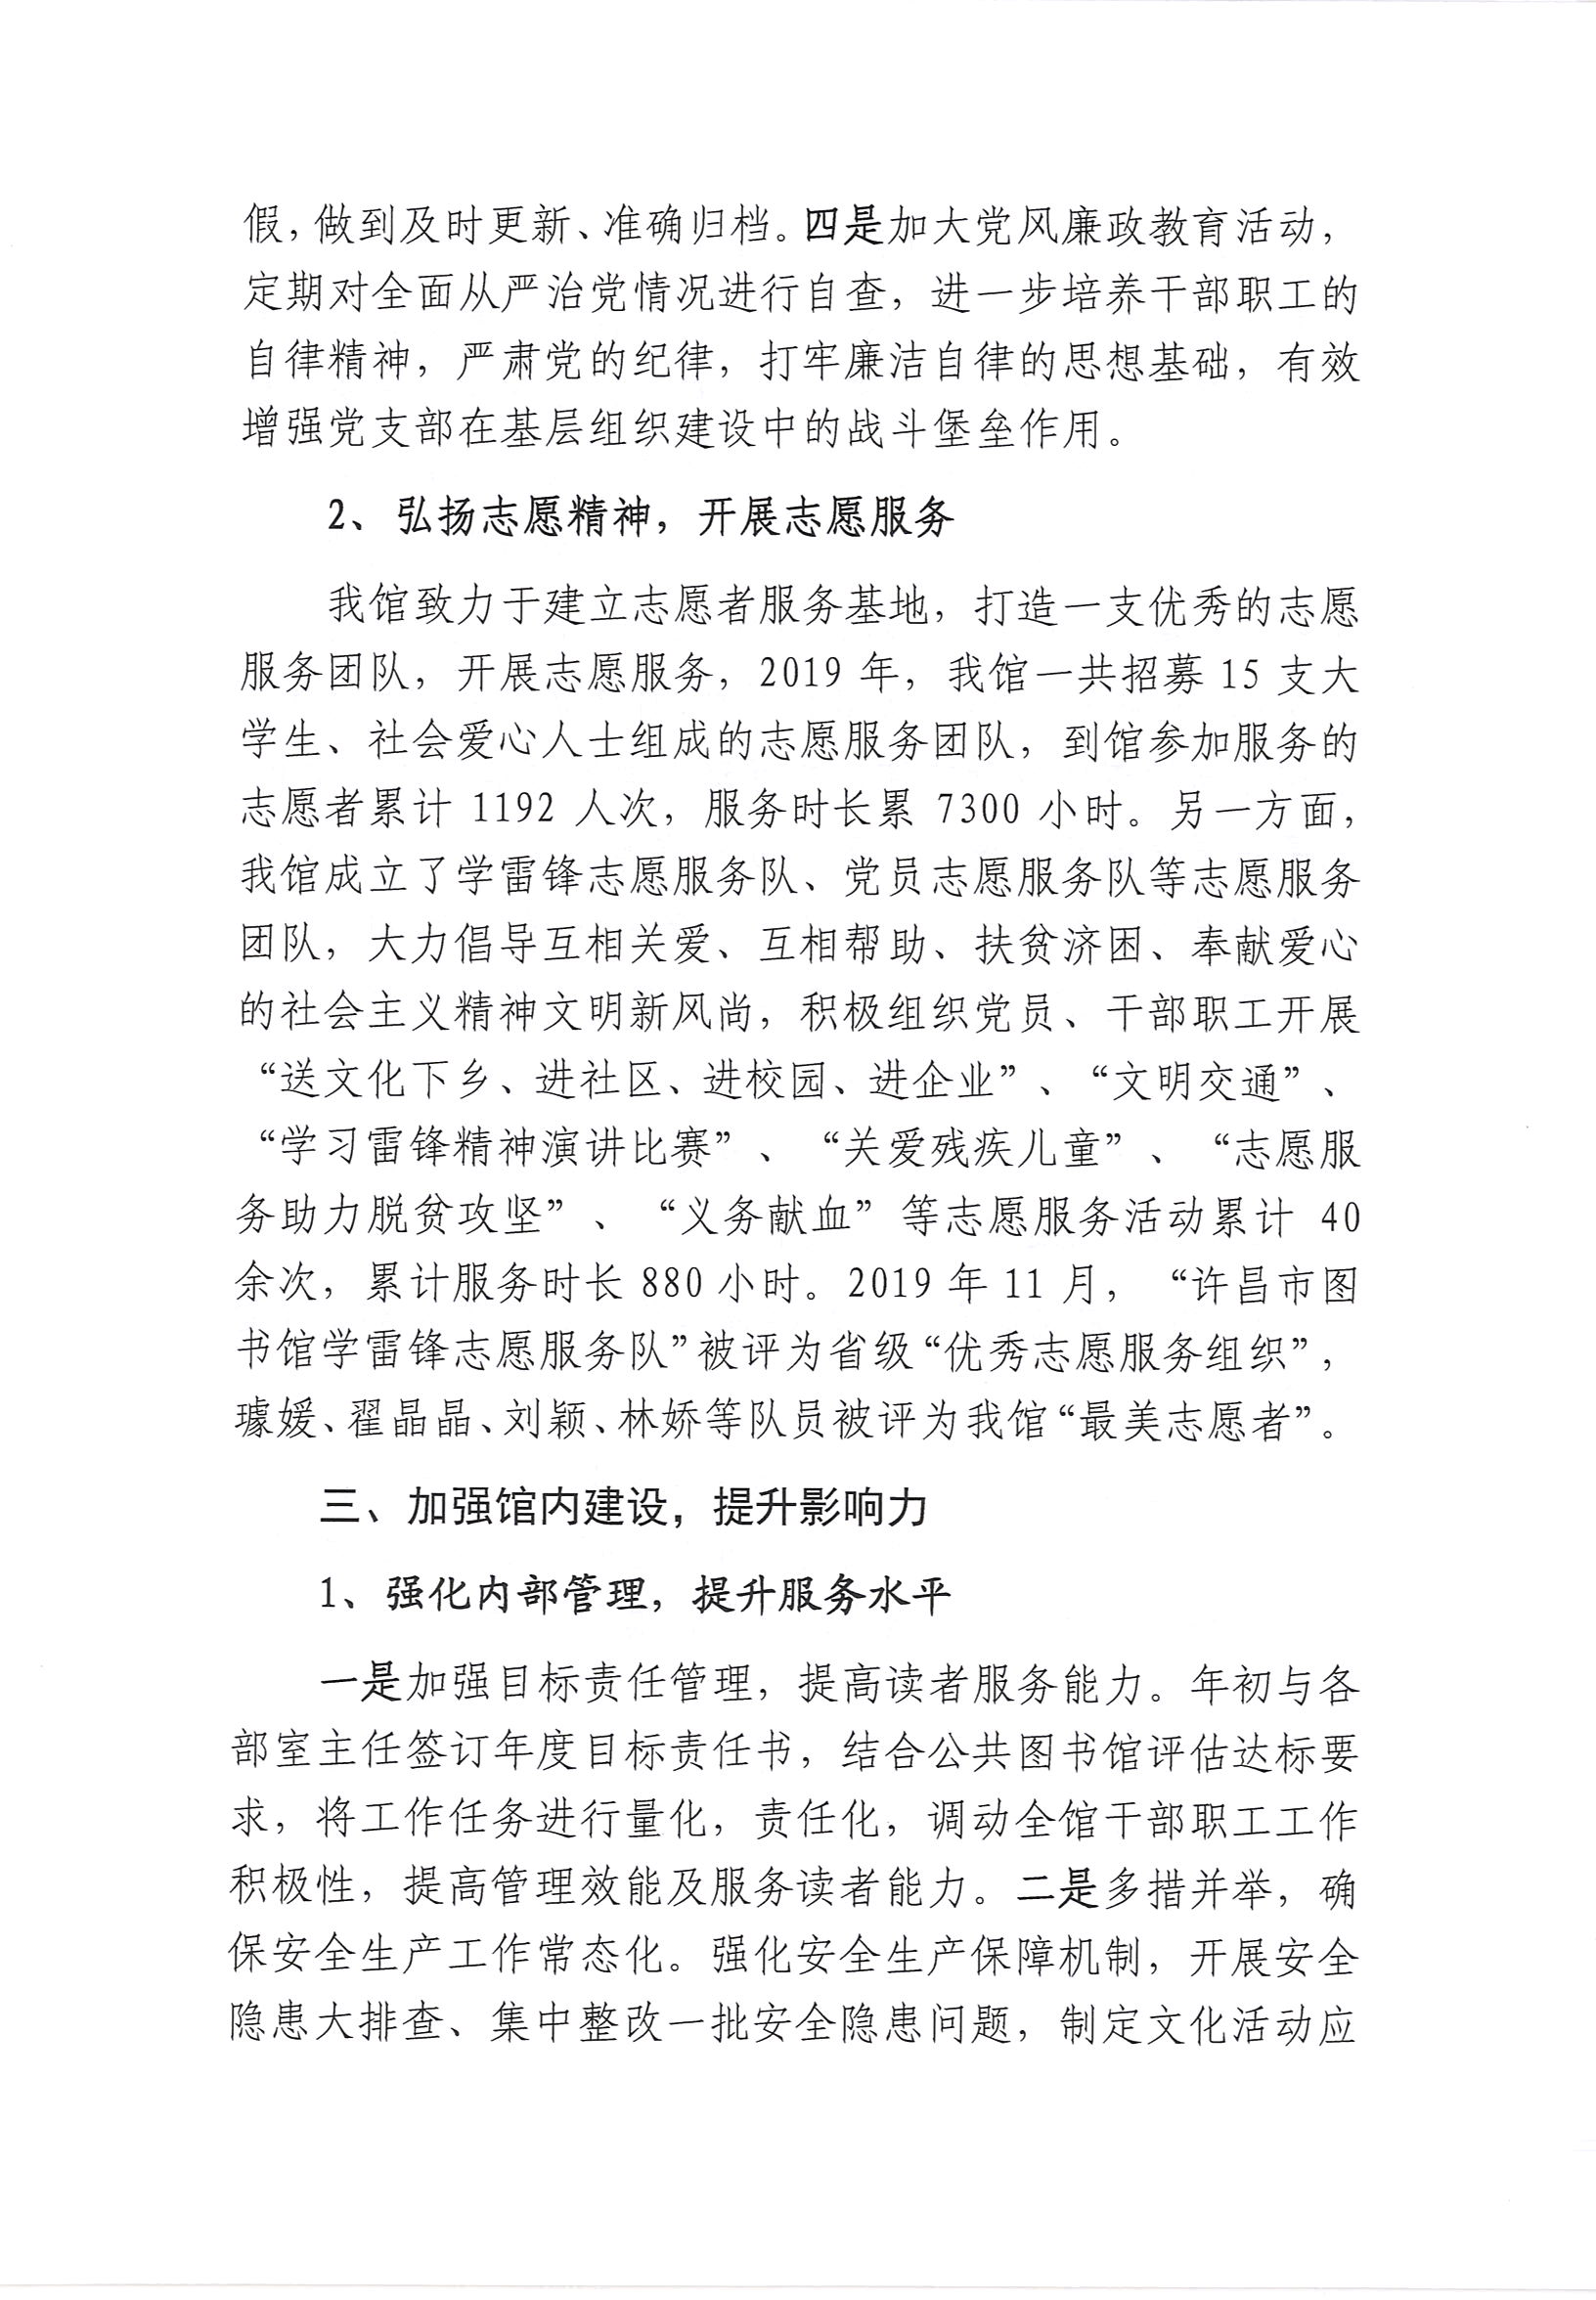 许昌市图书馆2019年度公共文化服务开展情况年报_部分4.jpg